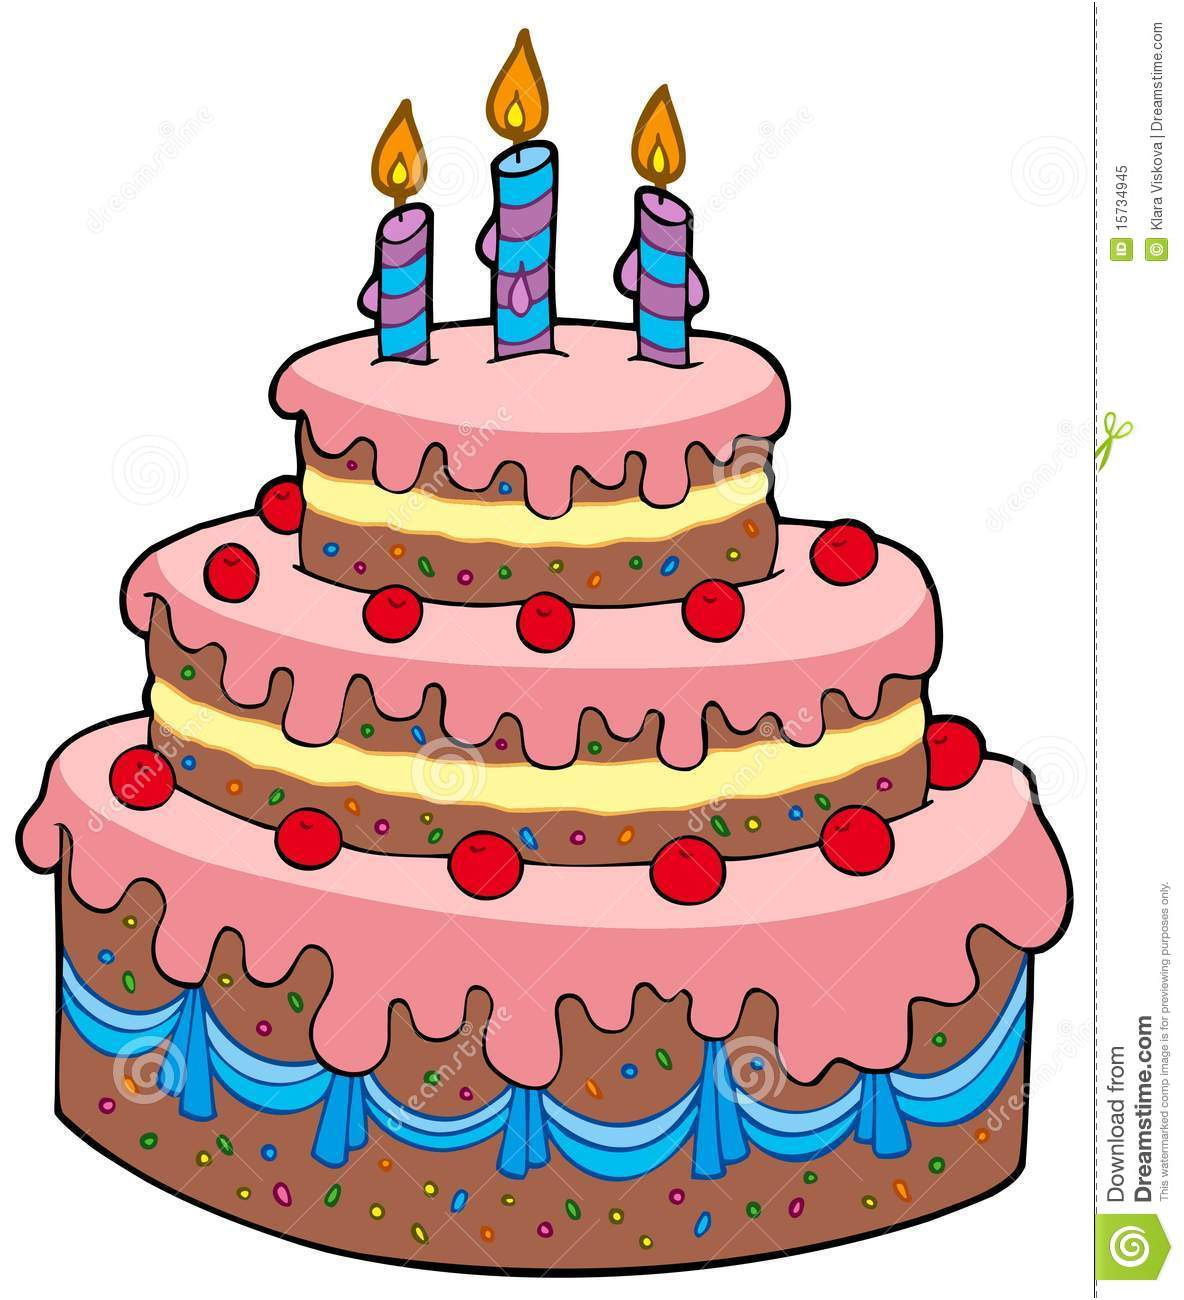 photo libre de droits grand gâteau d anniversaire de dessin animé image